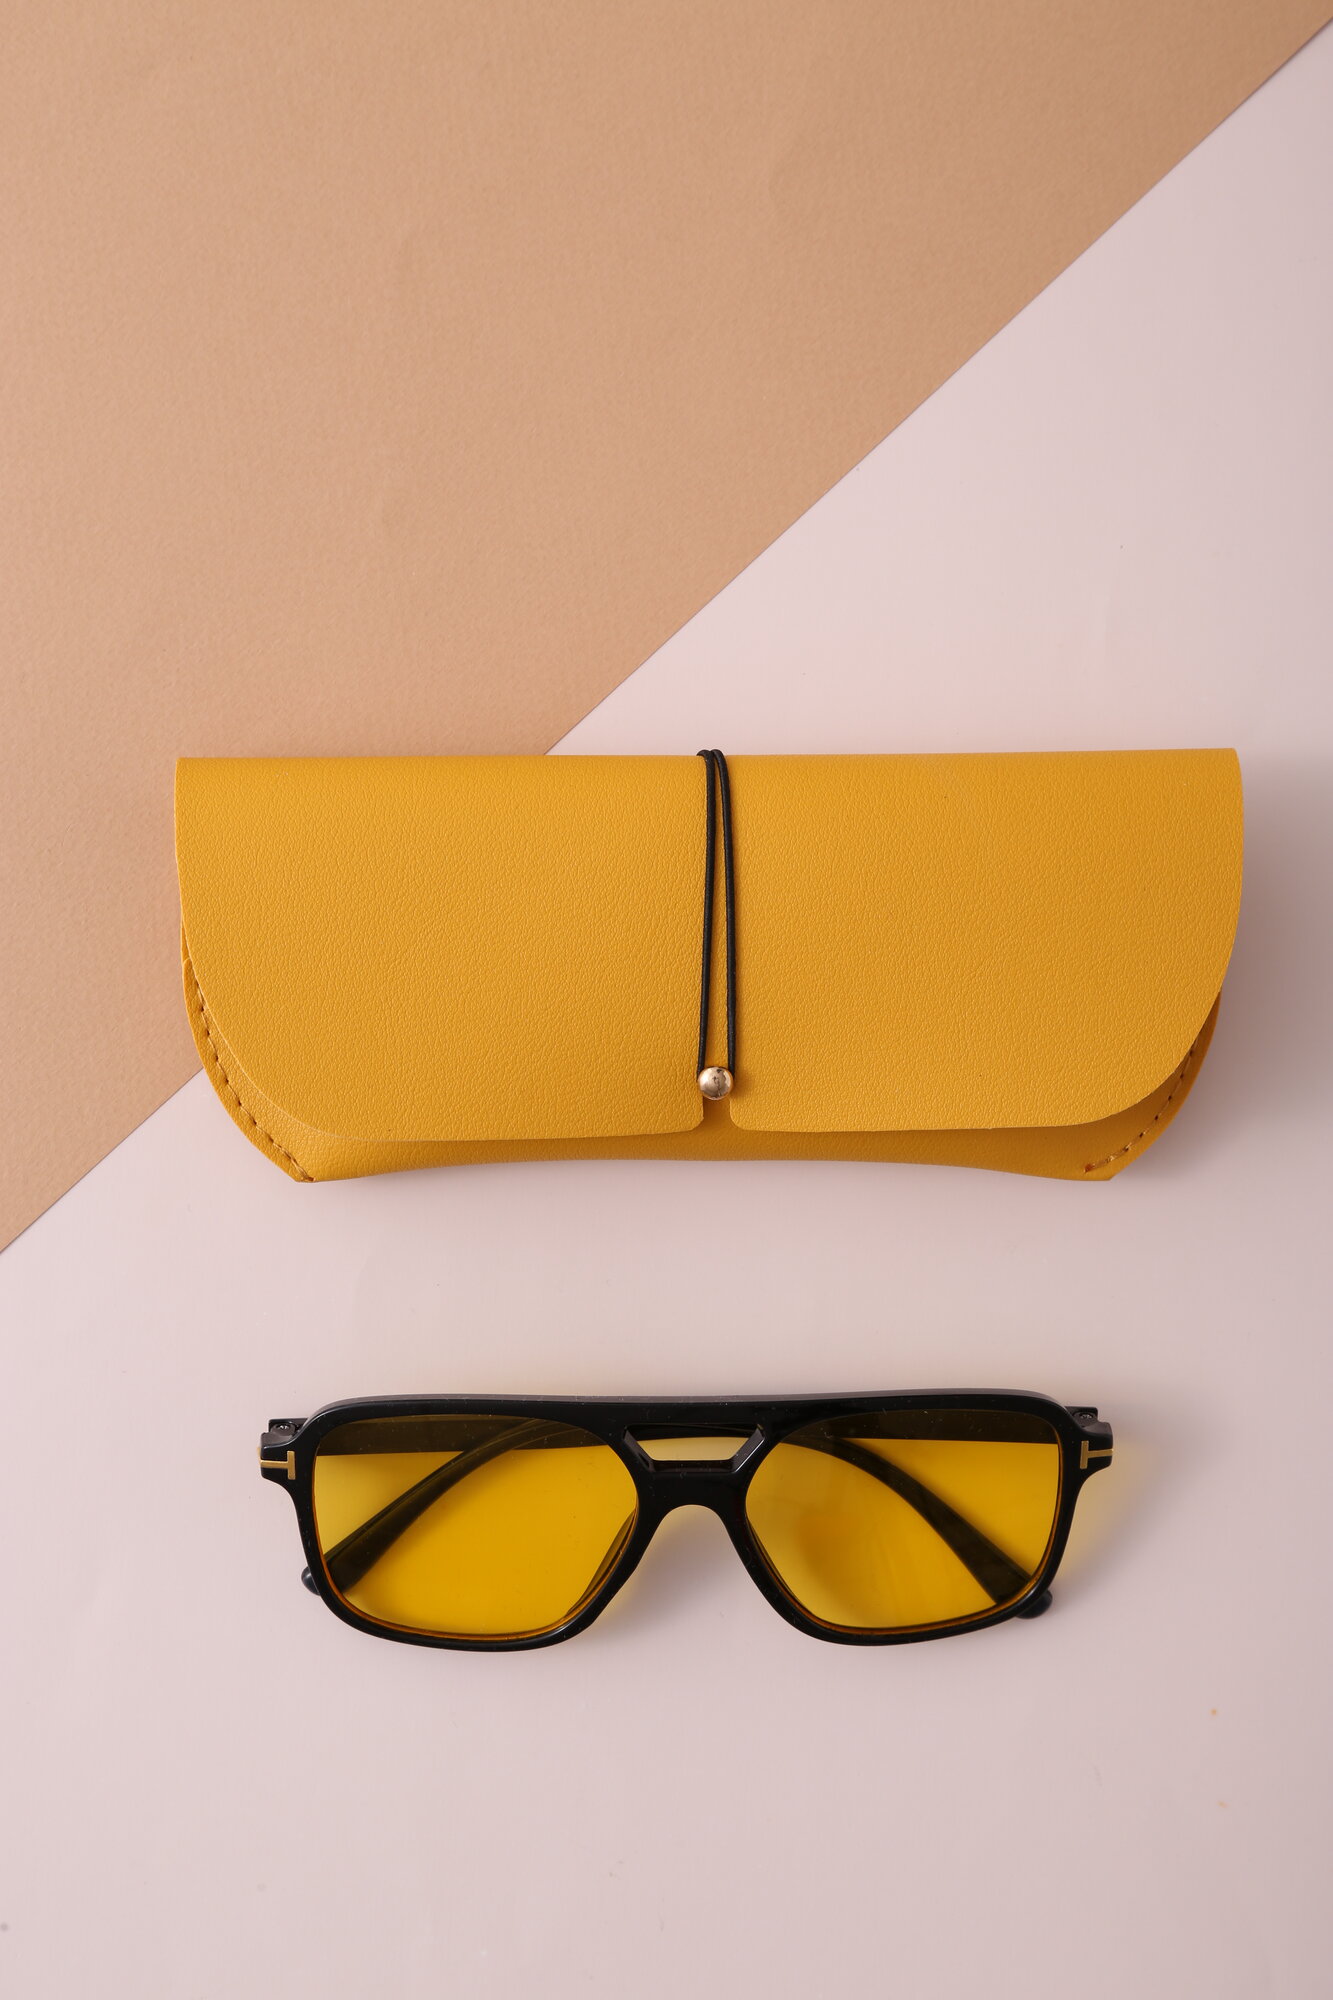 Солнцезащитные очки  Модные очки с желтыми линзами и футляром под цвет